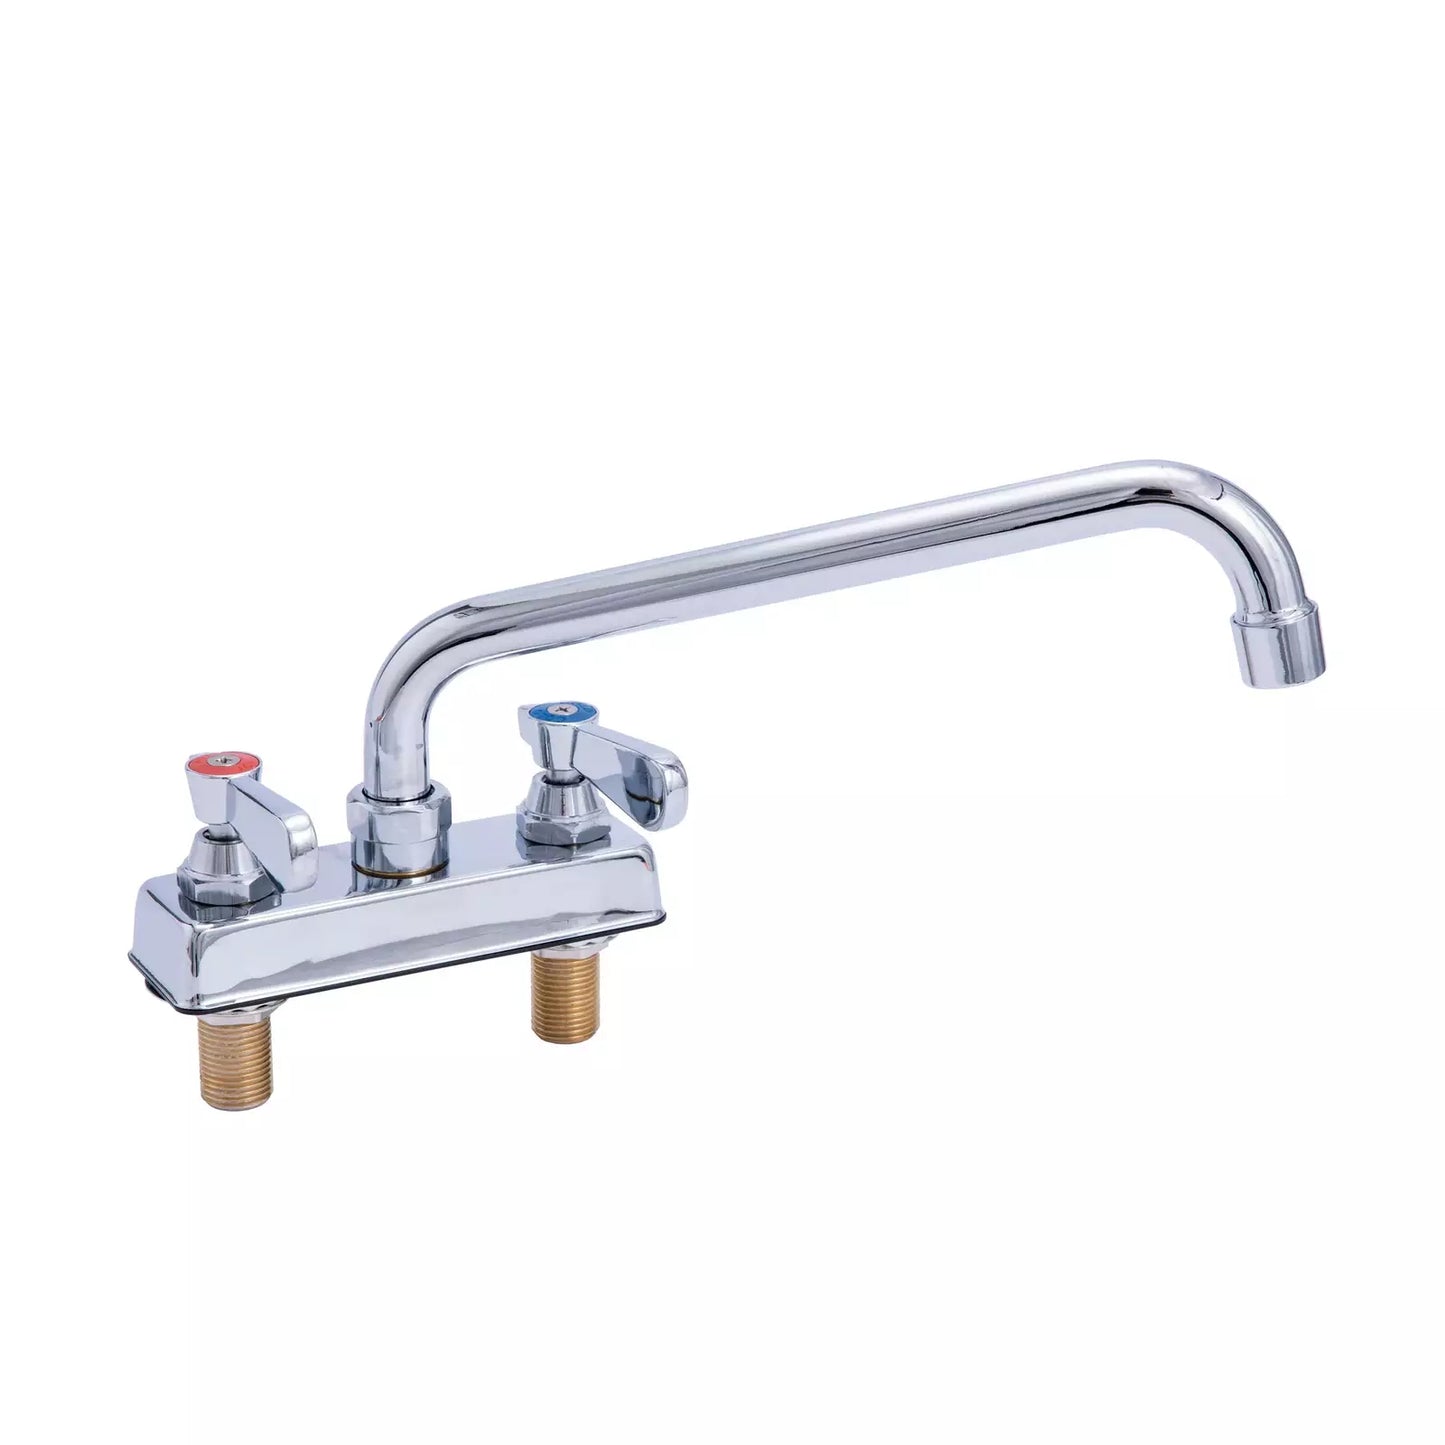 KCS DELDF-D410 4" Center Deck Mount Sink Faucet with 10" Swing Spout